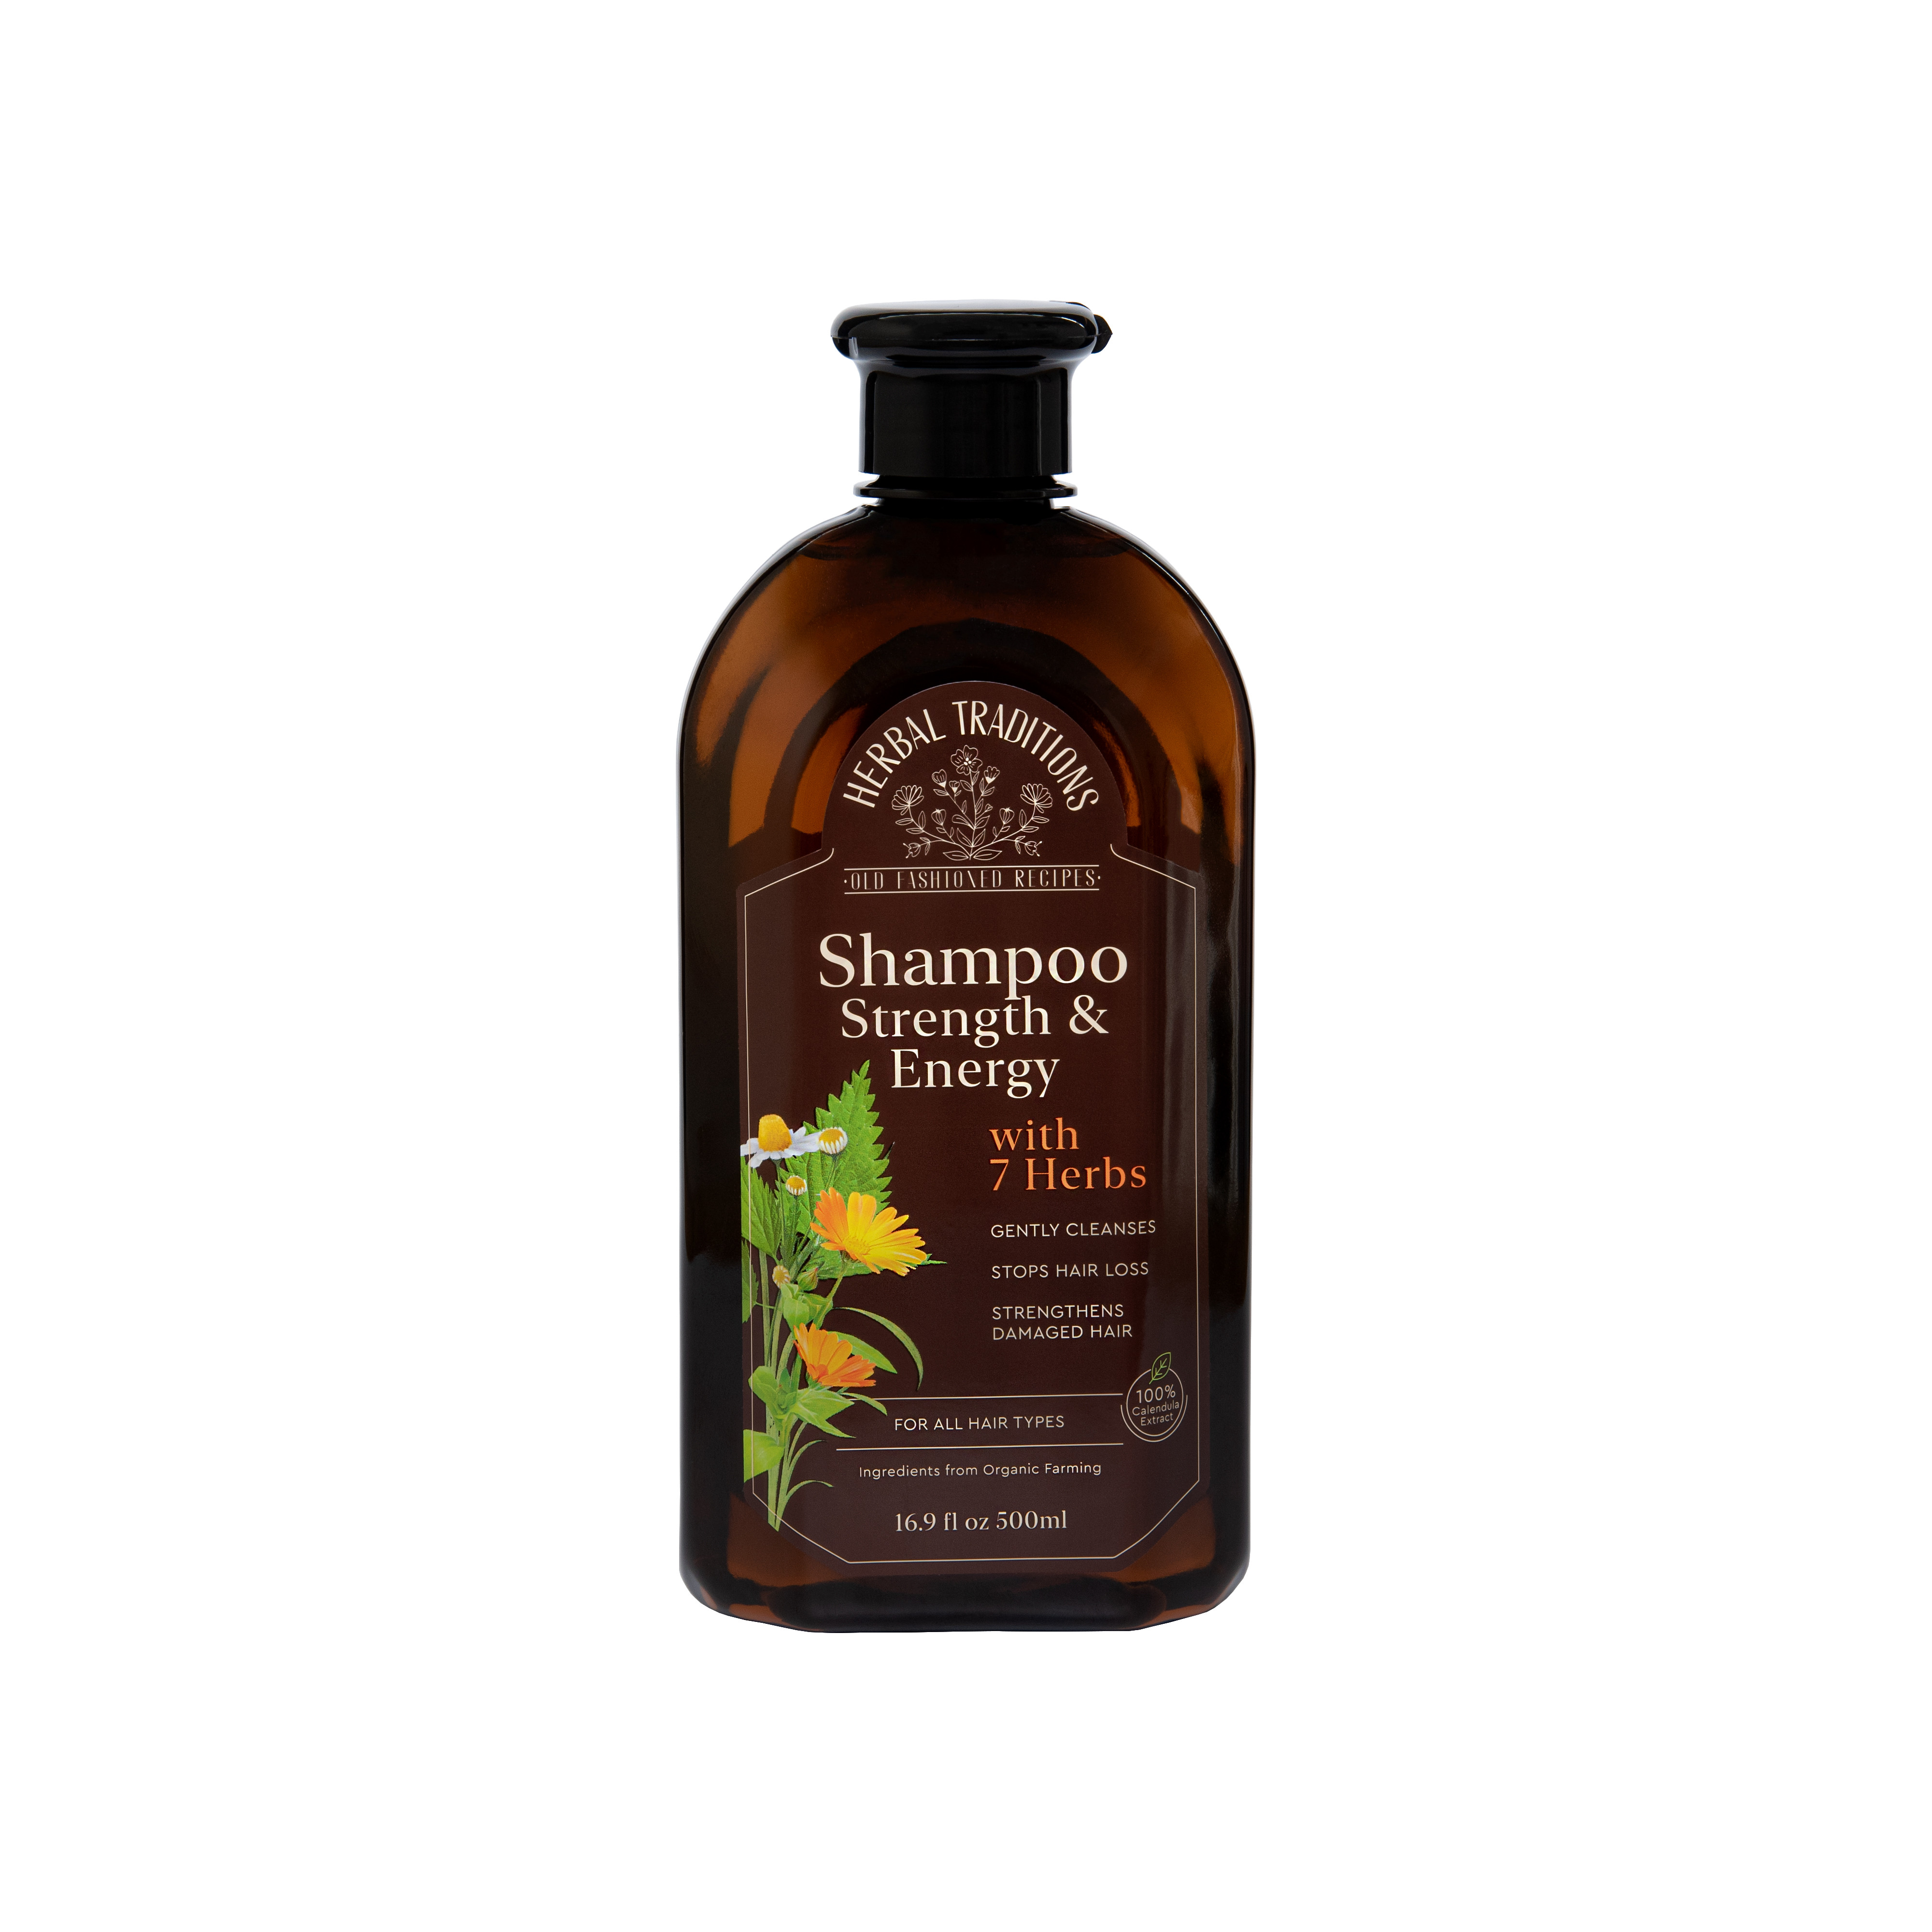 herbs szampon